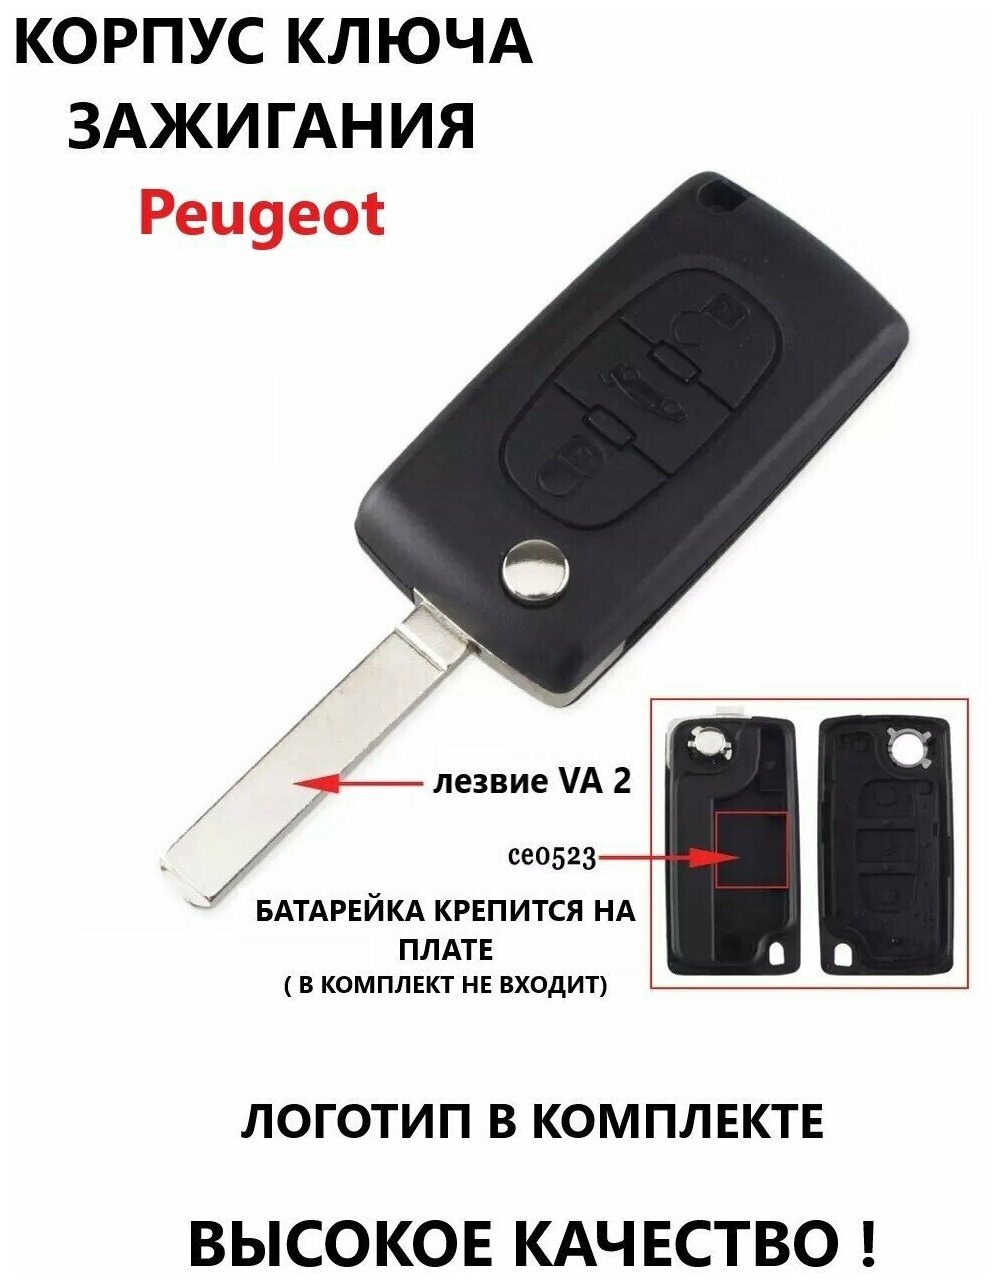 Корпуc ключа зажигания Пежо / Peugeot, 3 кнопки, лезвие VA 2 (батарейка крепится на плате)